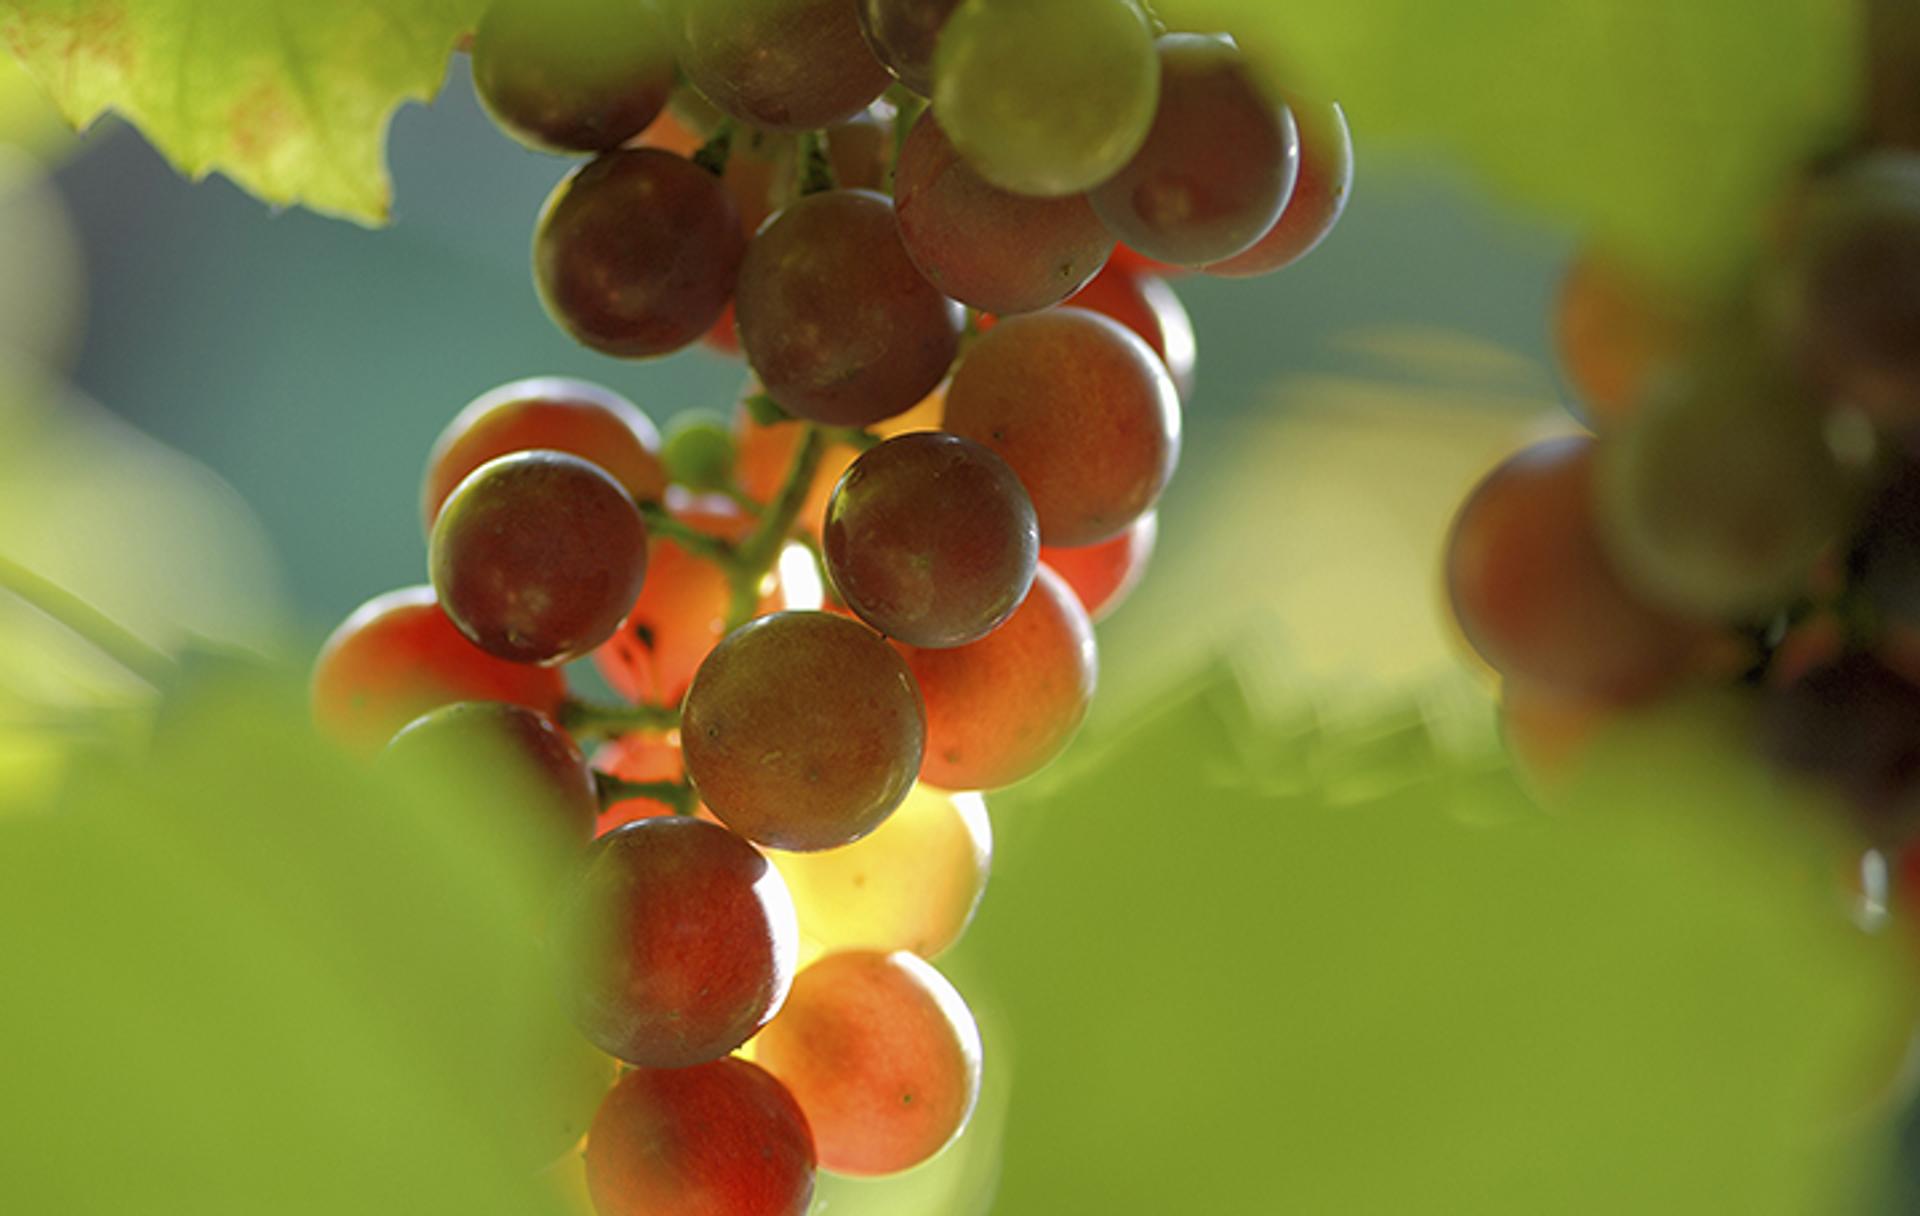 Traces de pesticides dans le vin : faut-il s'inquiéter ?